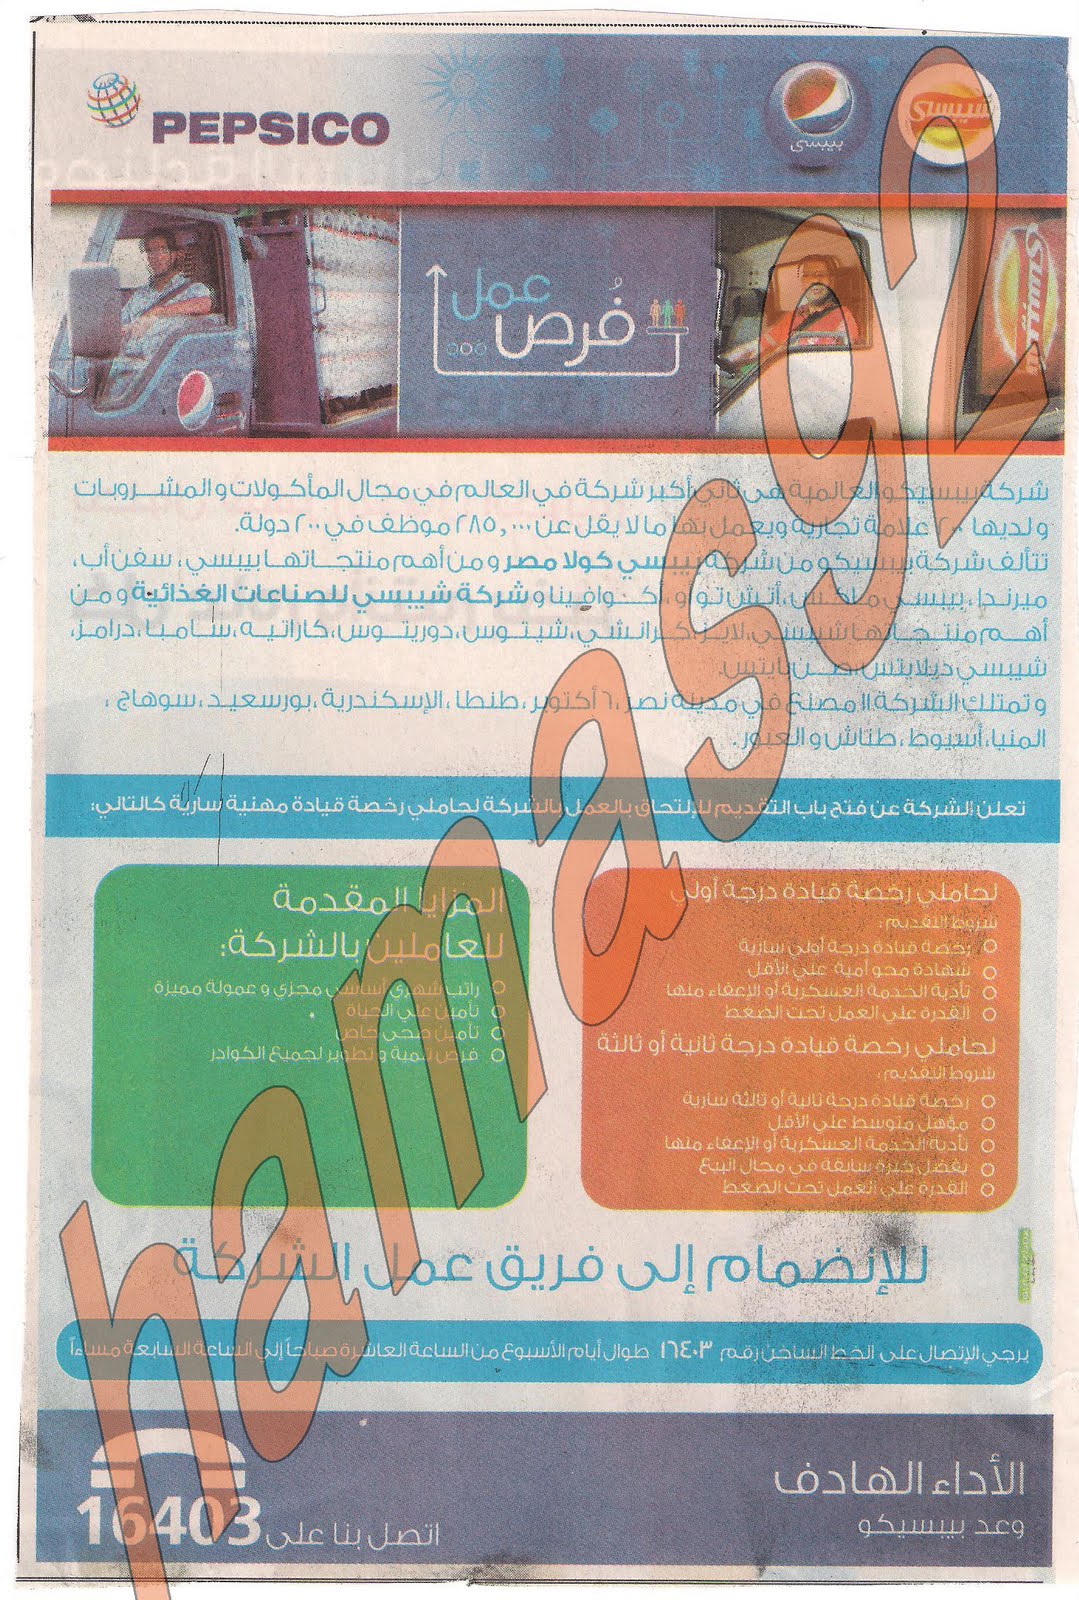 وظائف جريده اهرام الجمعه 29 يوليو 2011 العدد الاسبوعى - الجزء الثالث Picture+010